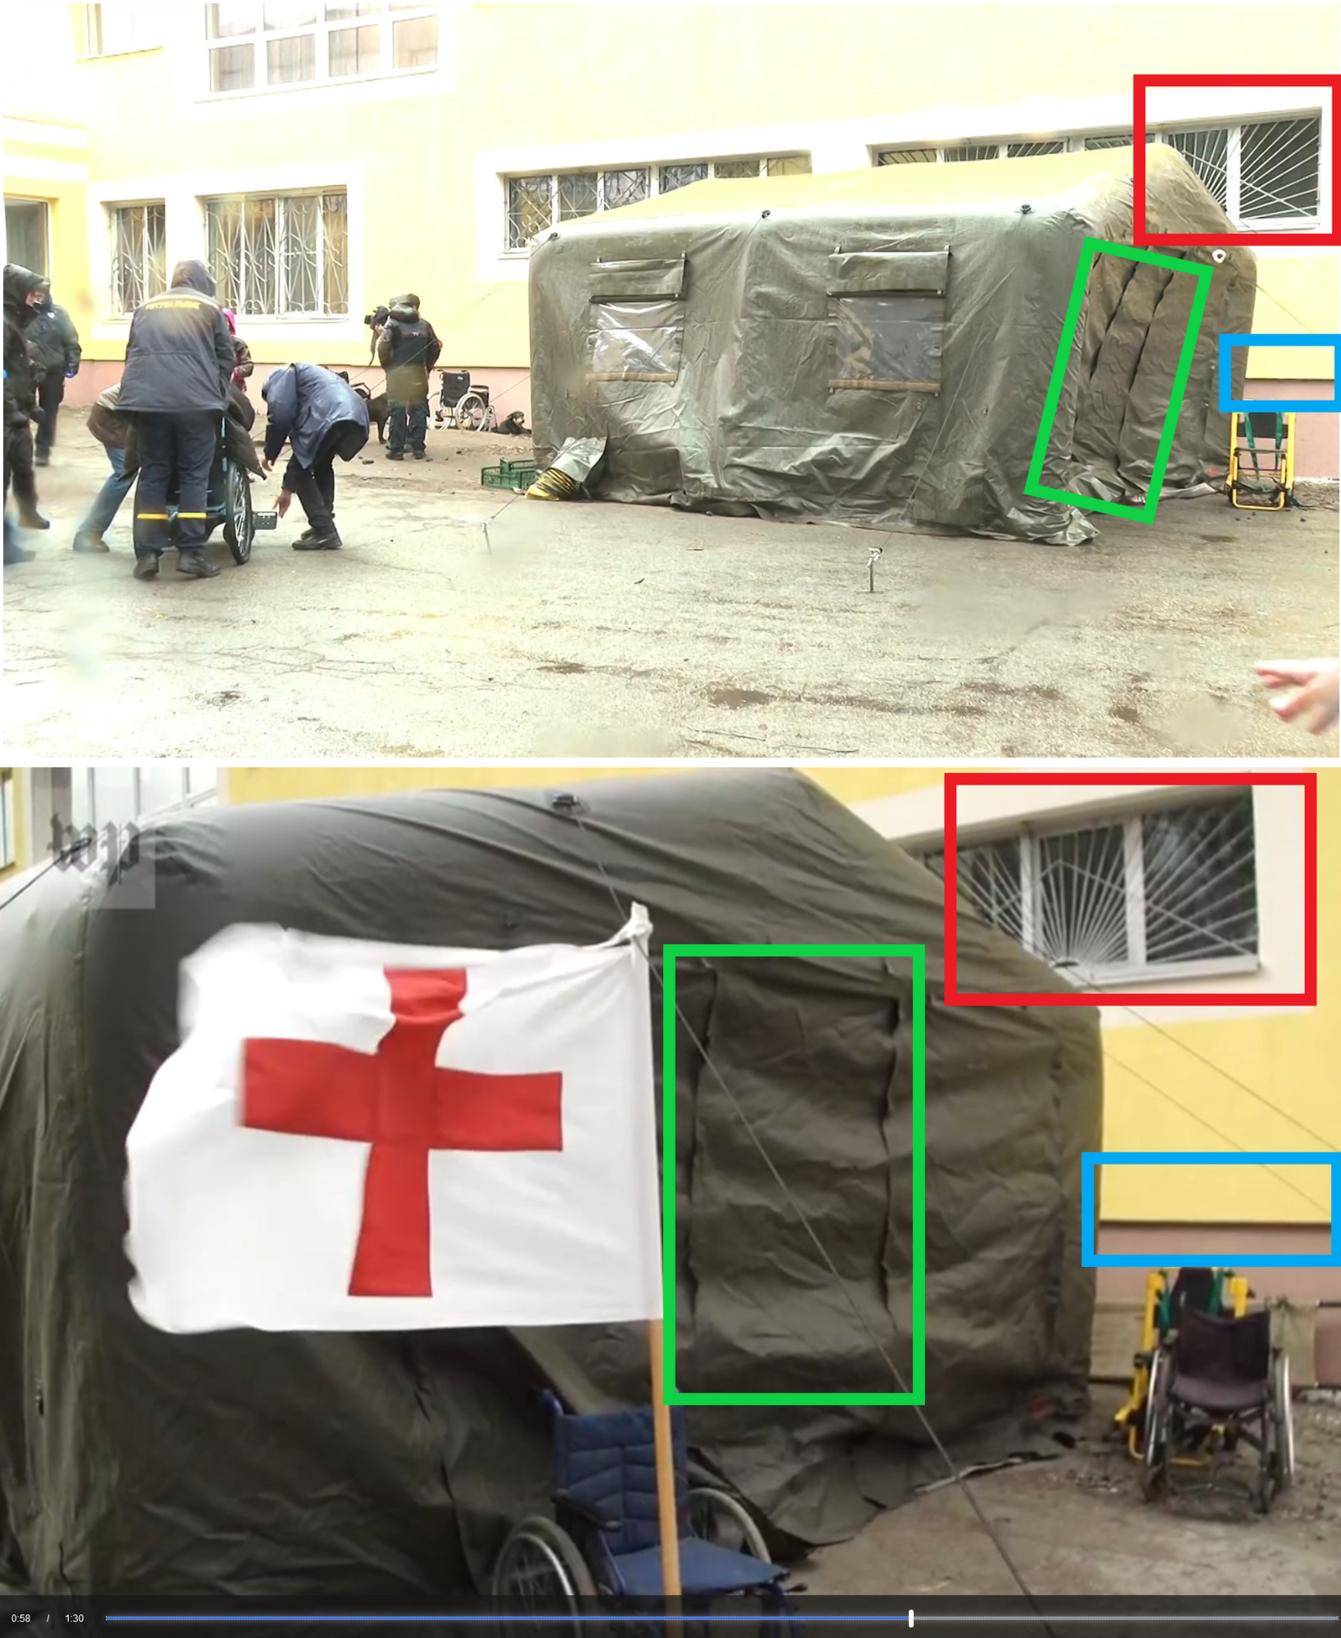 Factcheck: Oekraïense soldaten in busje met logo Rode Kruis is niet noodzakelijk een oorlogsmisdaad